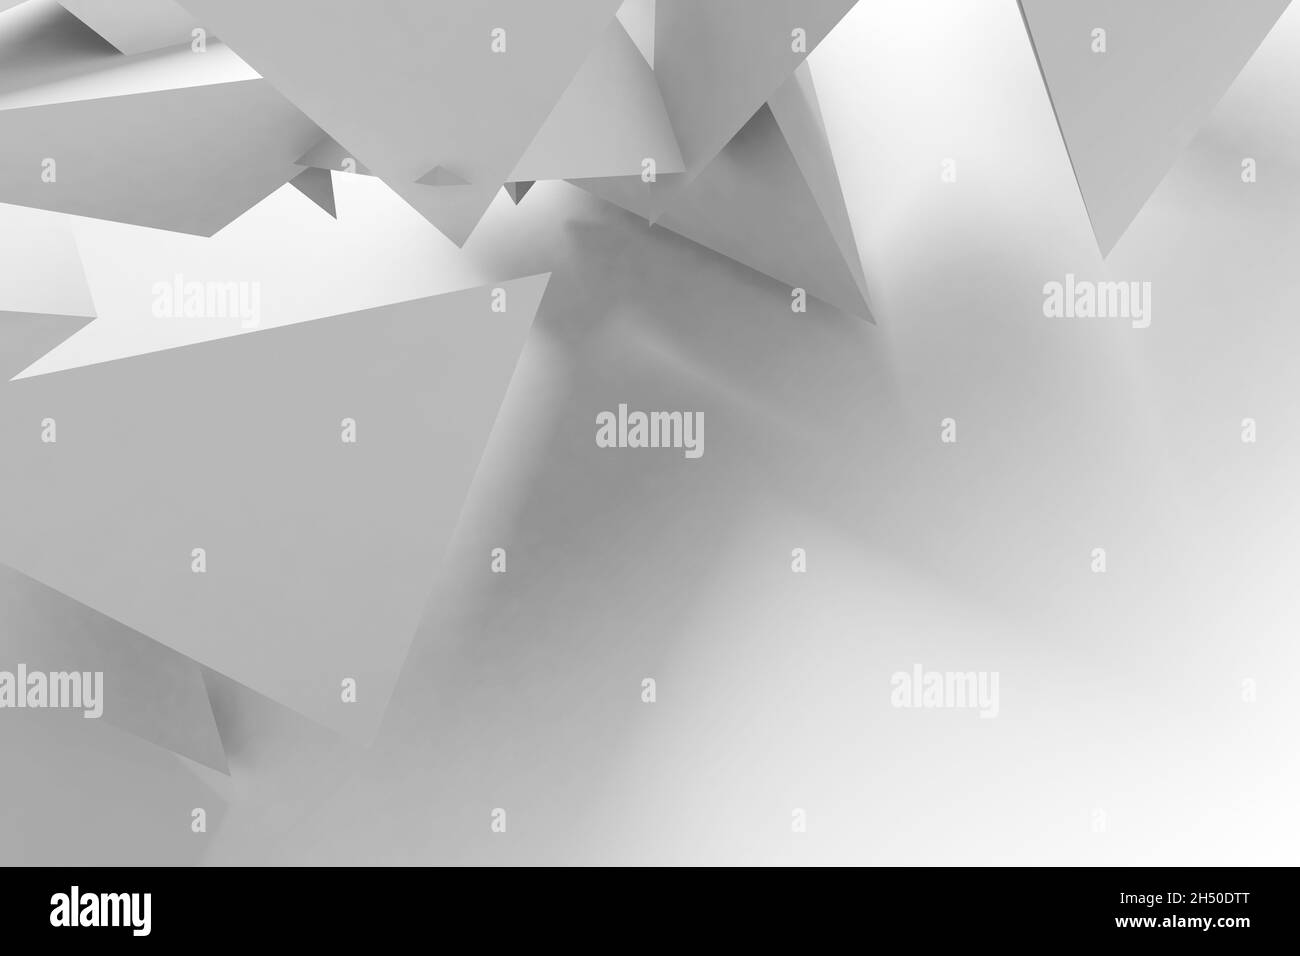 Arrière-plan géométrique abstrait, installation aléatoire d'objets triangulaires blancs.illustration de rendu 3d Banque D'Images